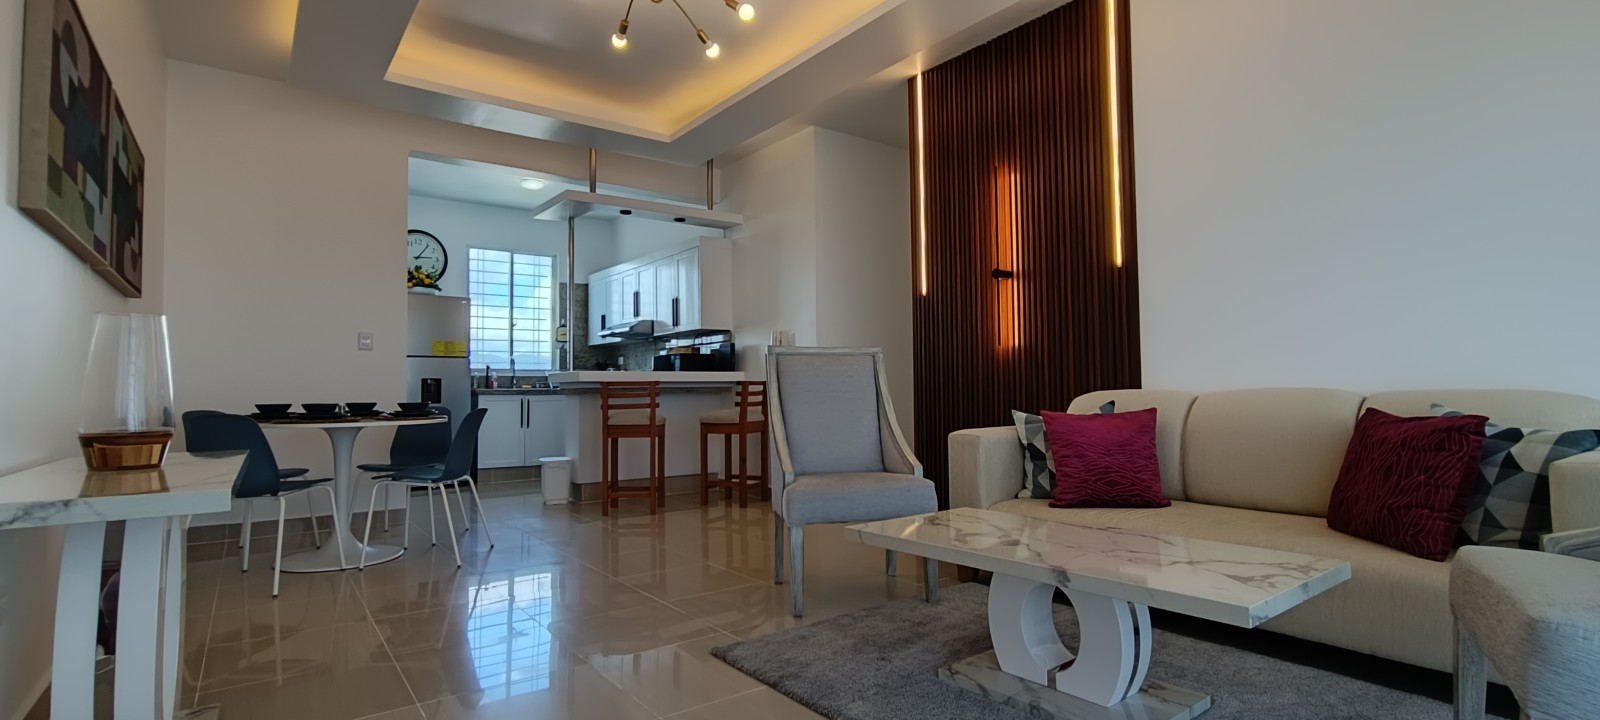 apartamentos - Vendo 4to piso Amueblado para inversión airbnb en el despertar 4